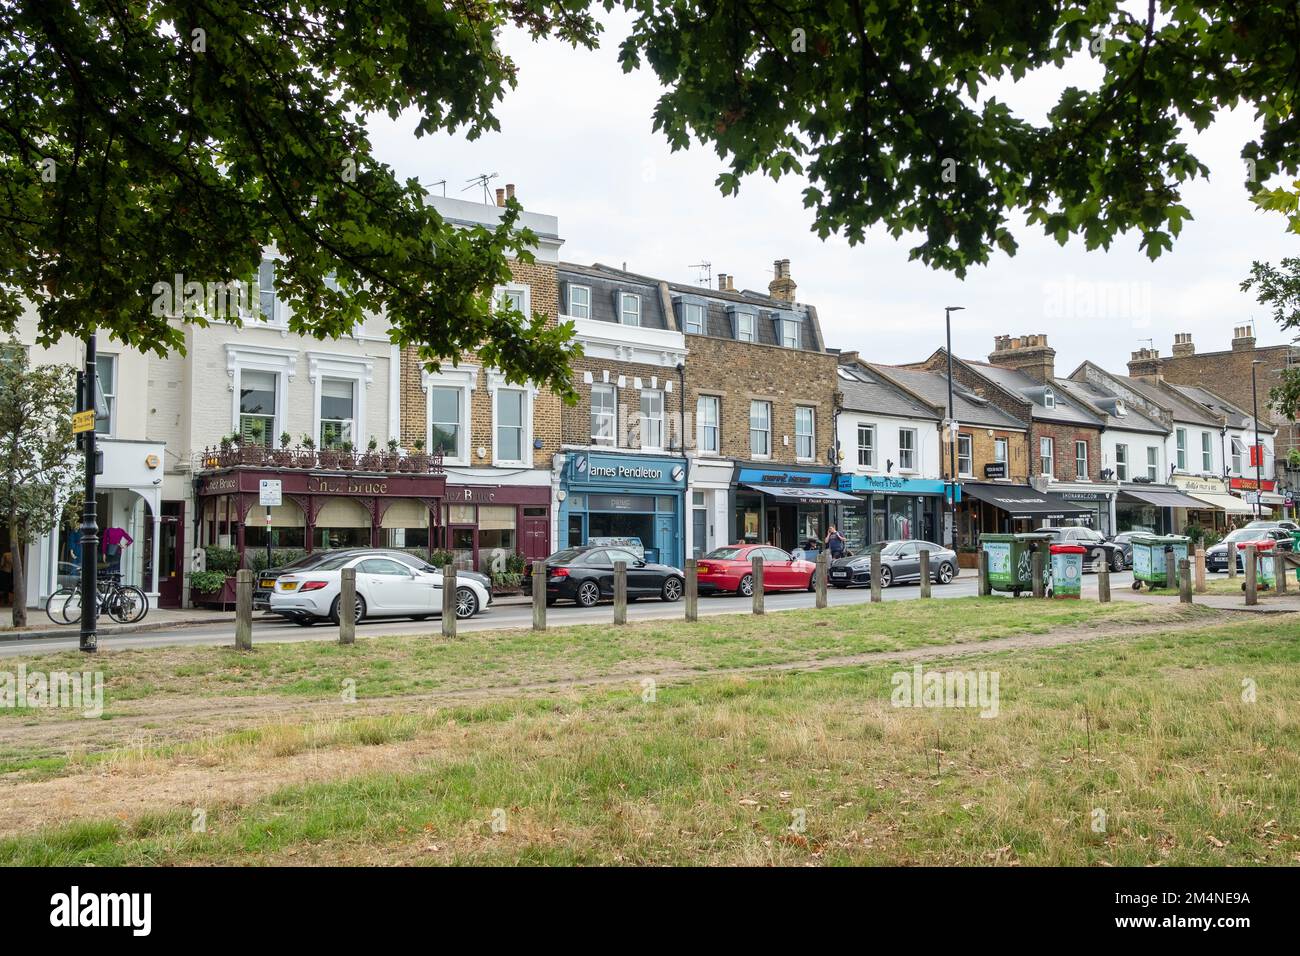 London - September 2022: Geschäfte auf der Bellevue Road am Wandsworth Common, einem Wohngebiet im Südwesten Londons Stockfoto